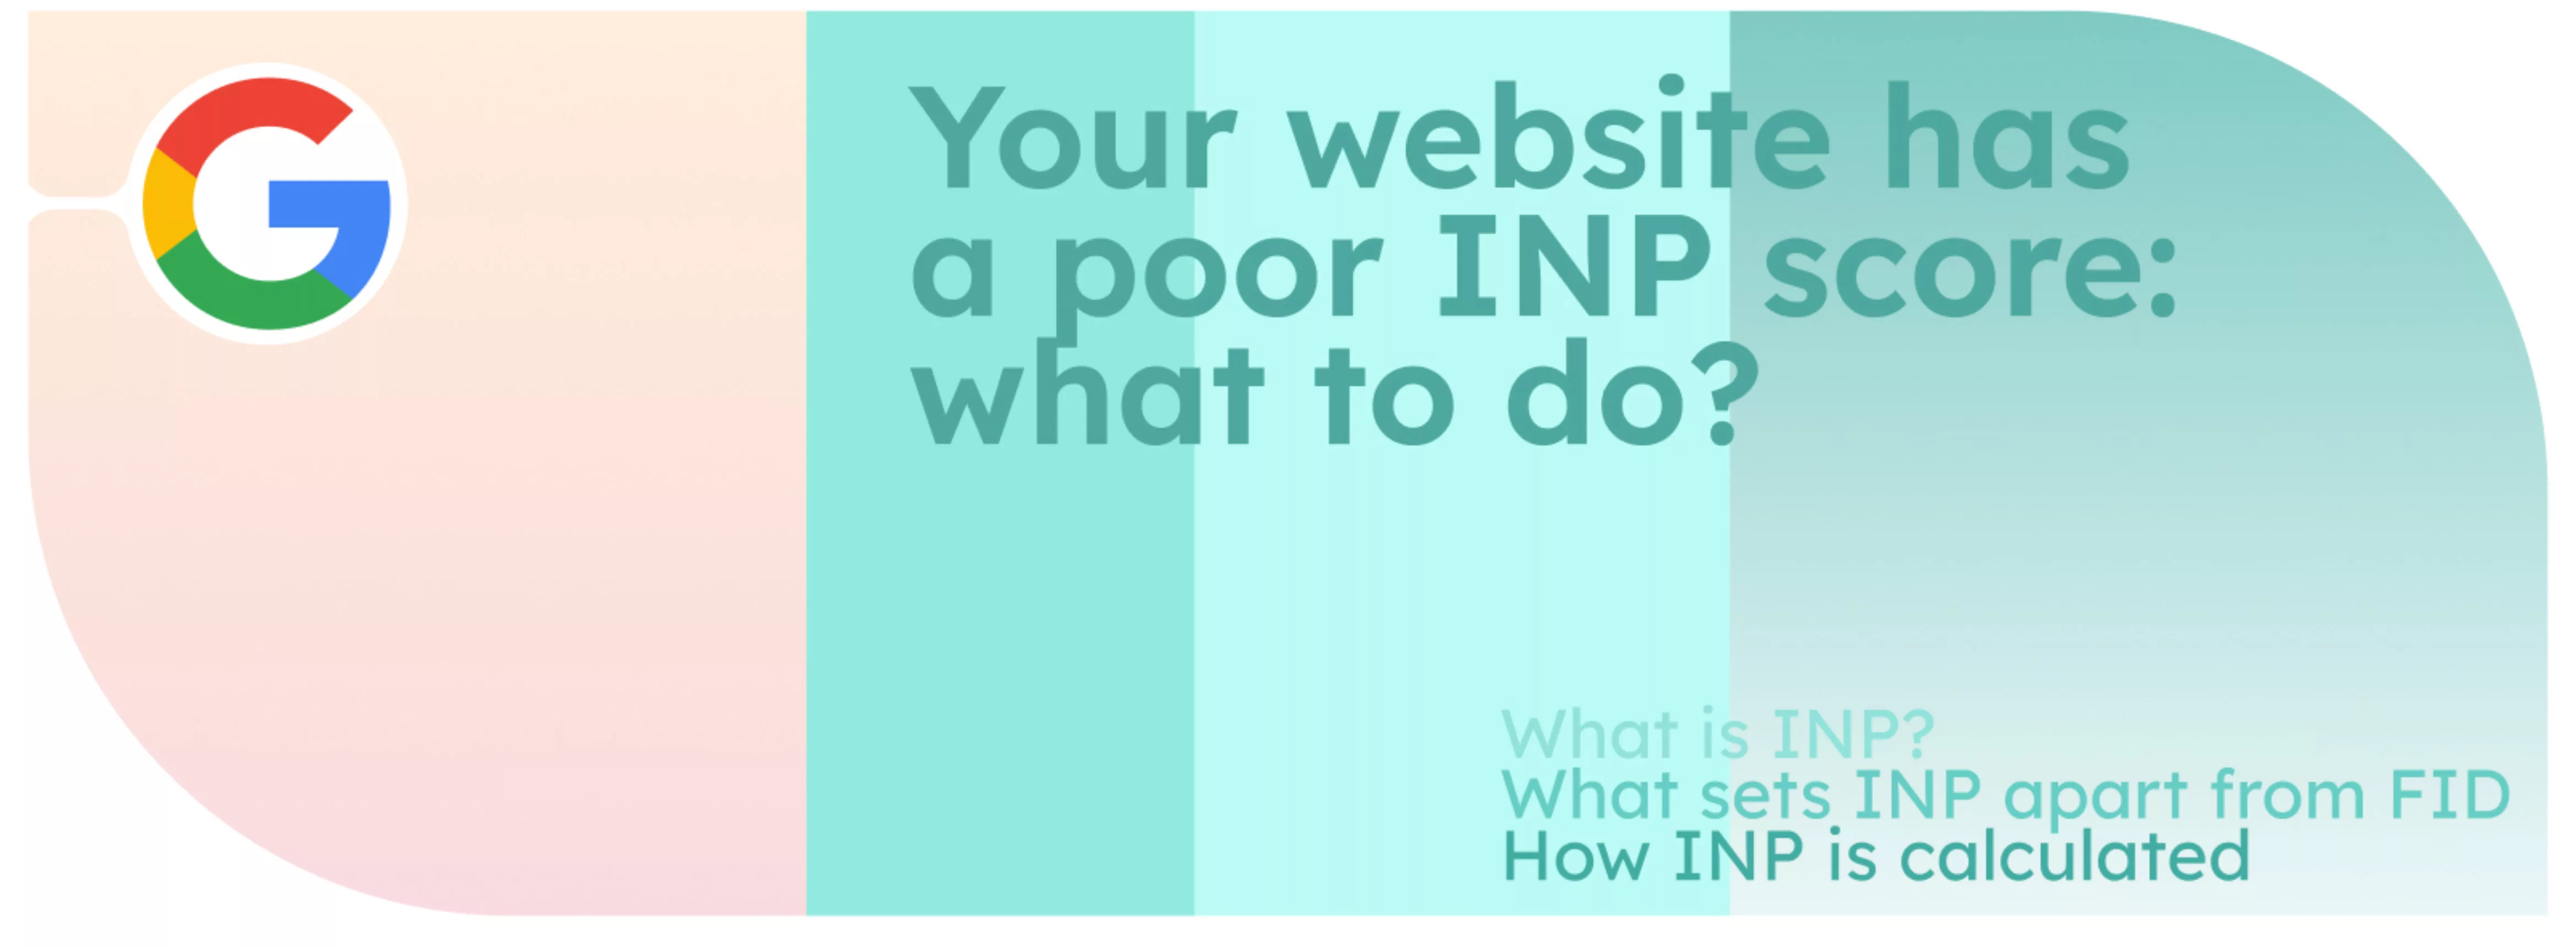 Votre site web a un mauvais score INP : que faire ?